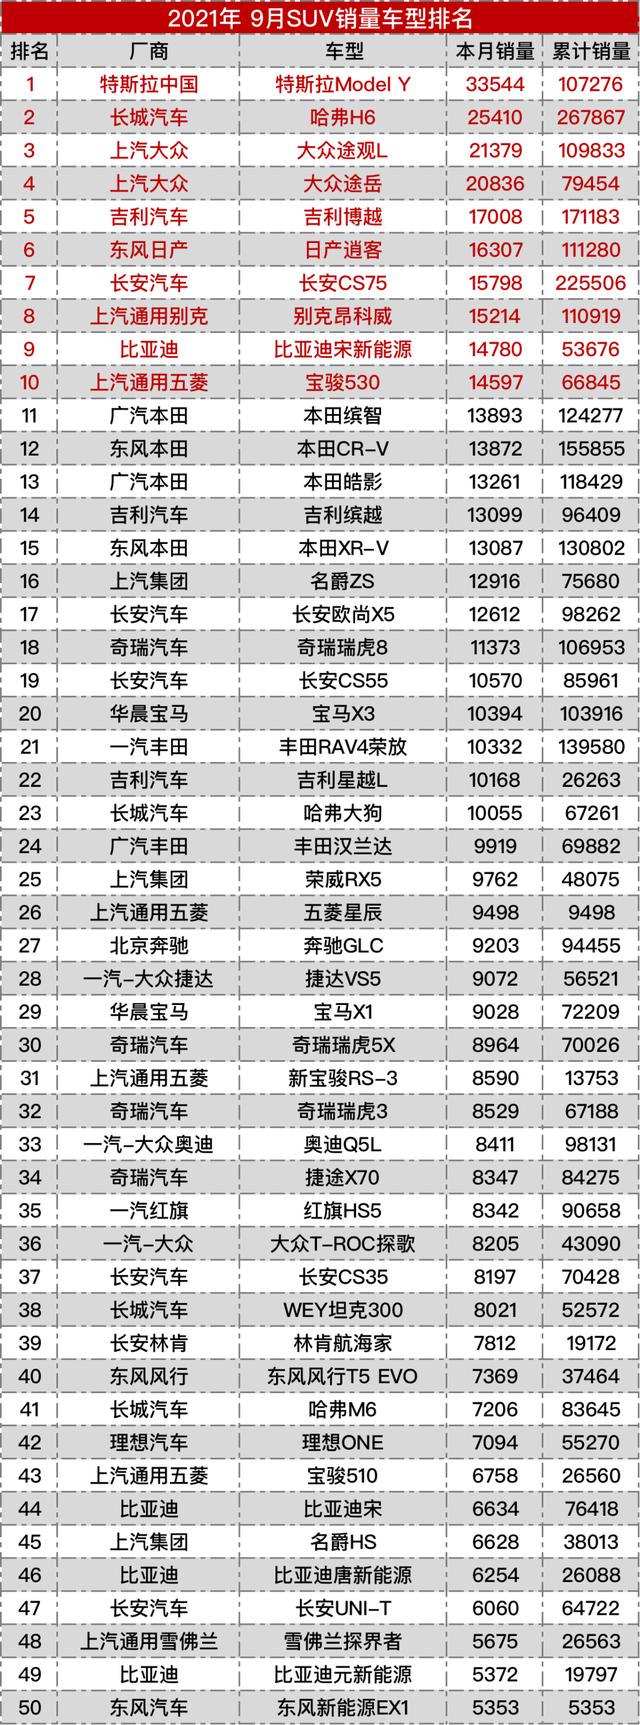 中国九月汽车销售排行榜(2021年9月份国产汽车销量排行榜)